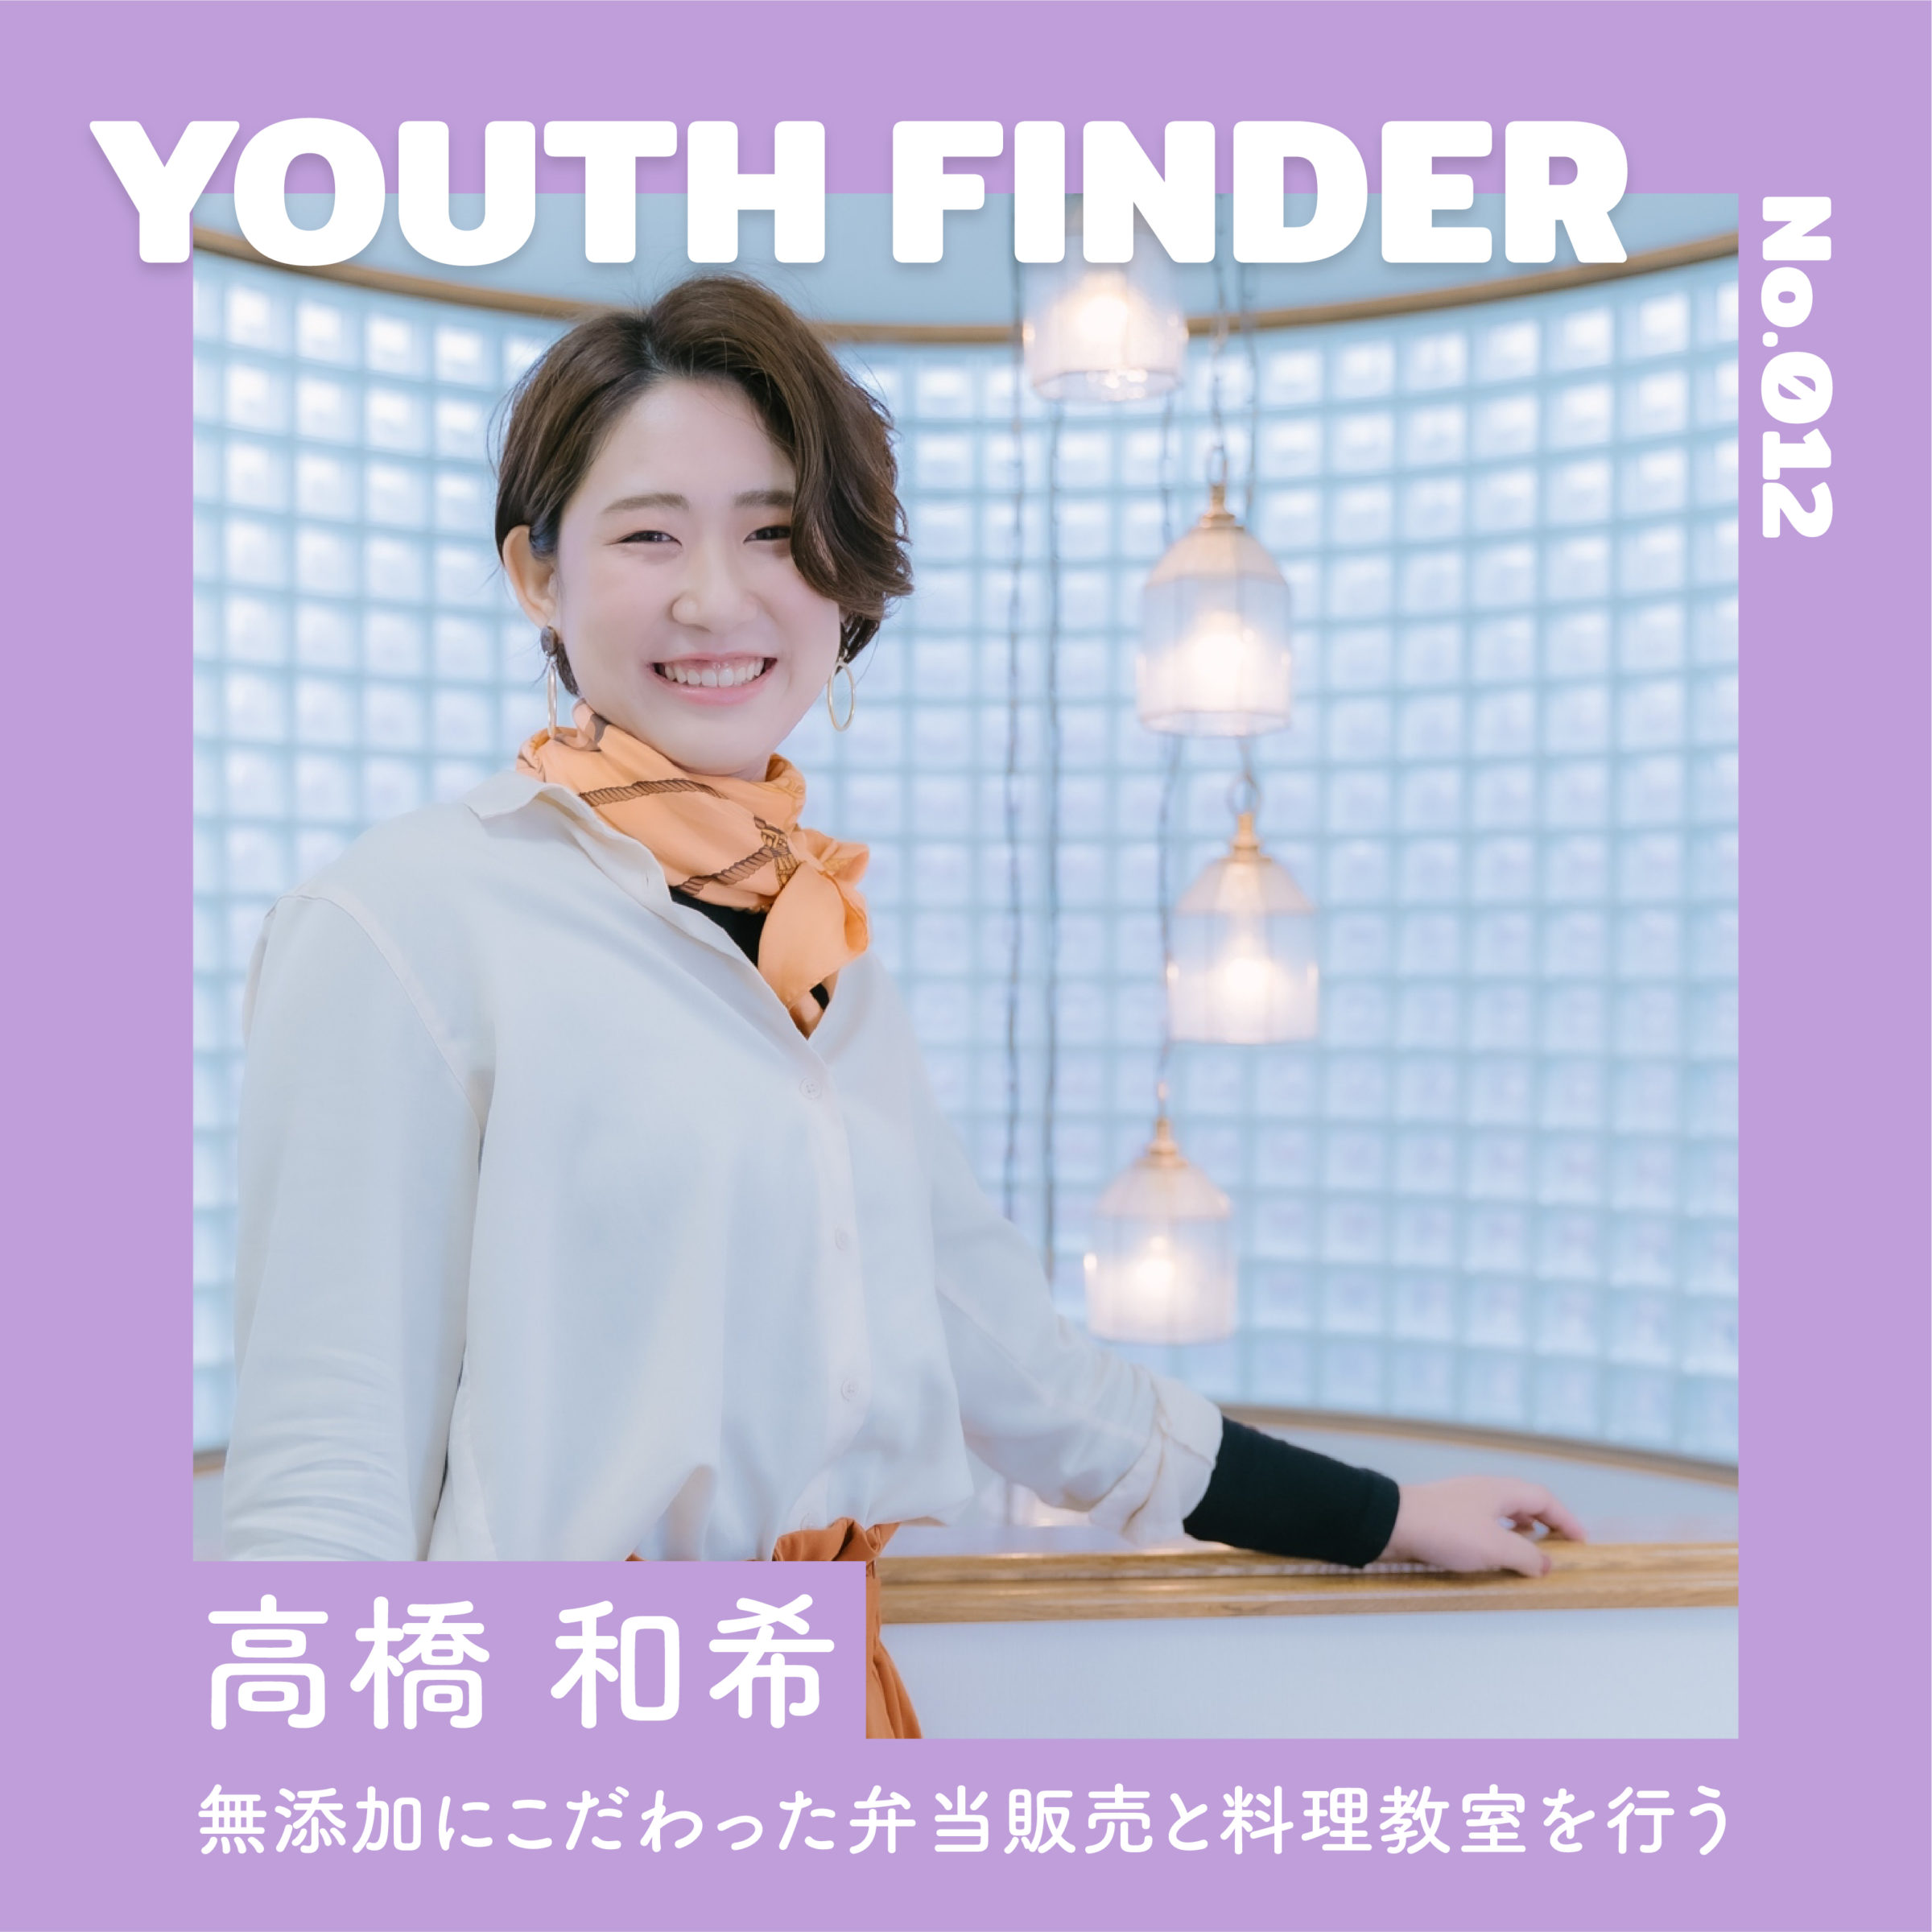 無添加にこだわった弁当販売と料理教室を行う 高橋和希さん【Youth Finder】のサムネイル